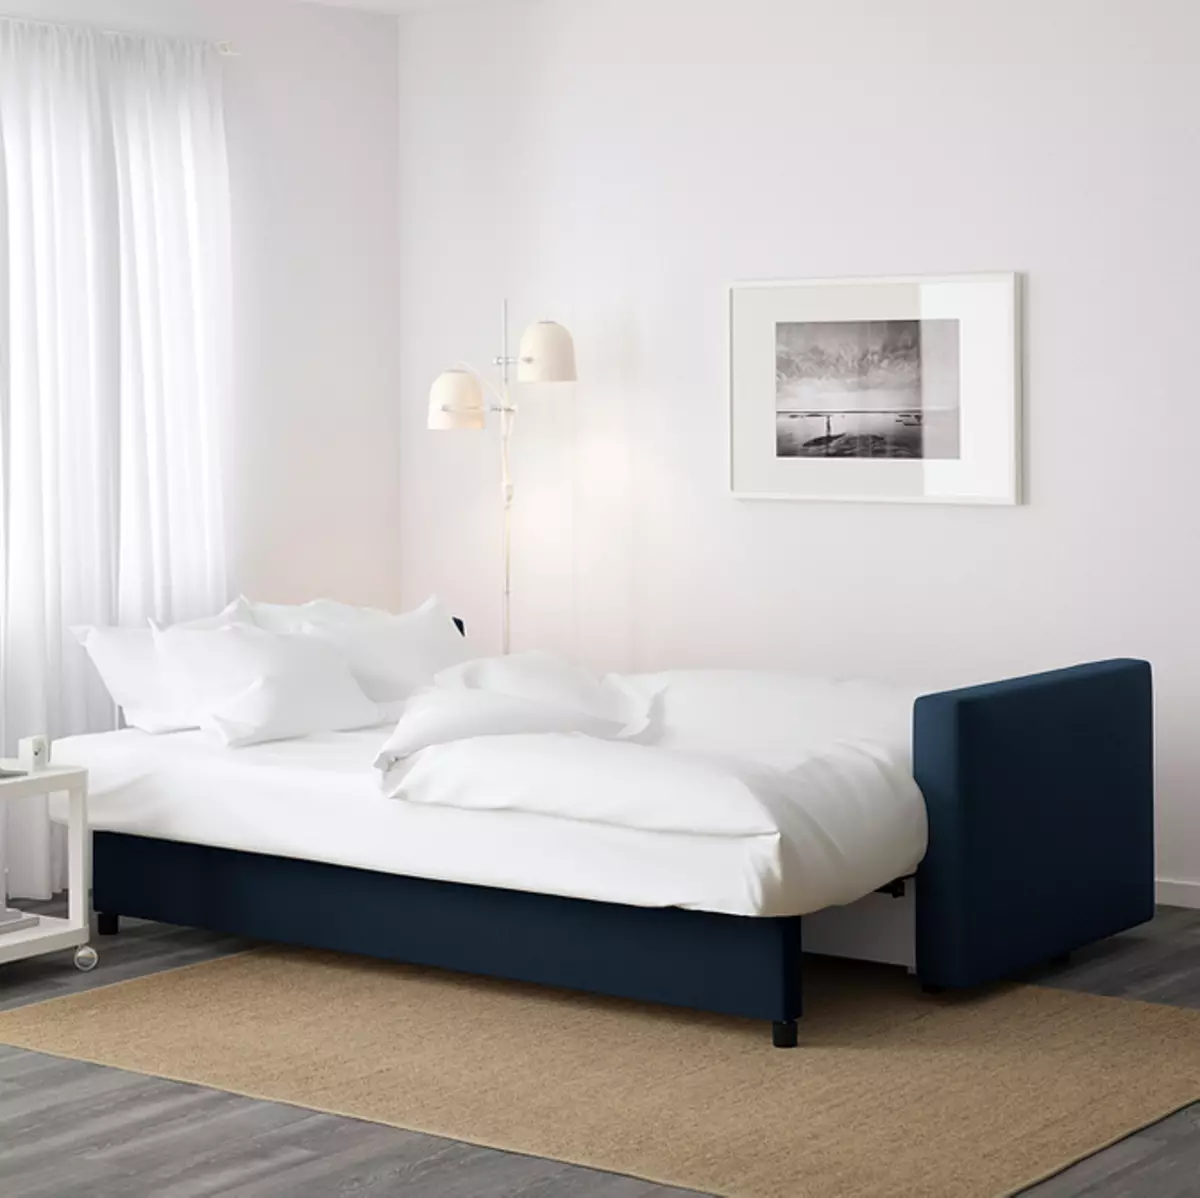 Ferramentando um lugar de dormir em melogabras: 9 melhores camas, sofás e sofás de Ikea 7288_24